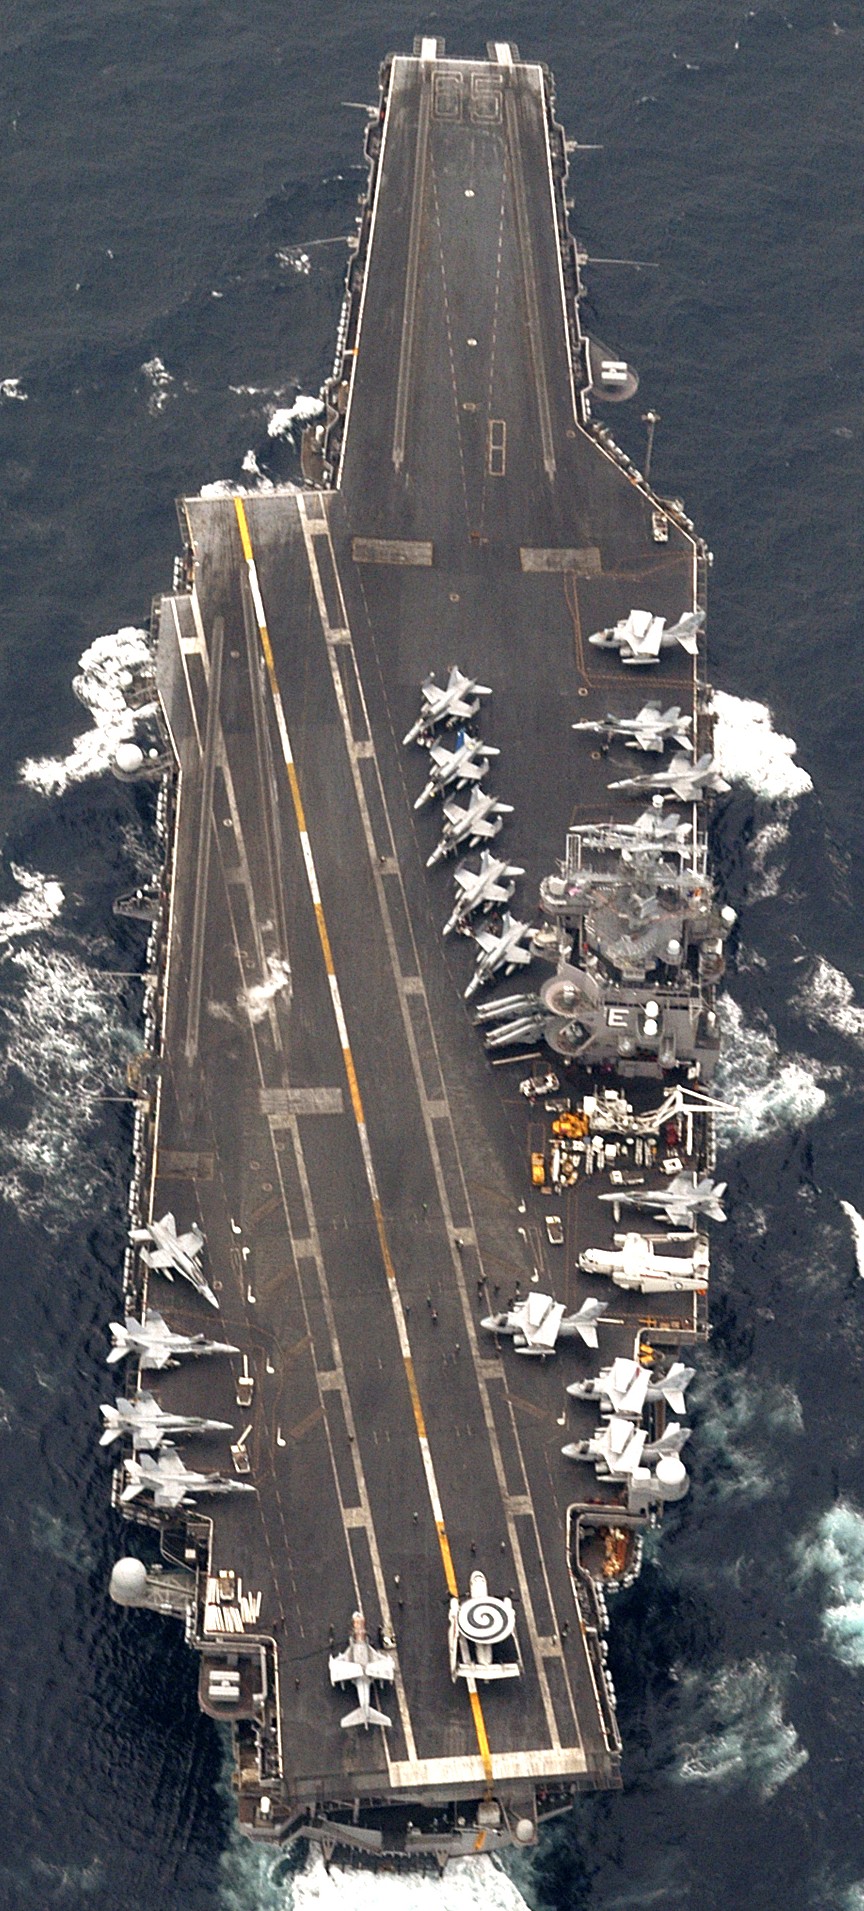 cvn-65 uss enterprise aircraft carrier air wing cvw-1 us navy 2004 60